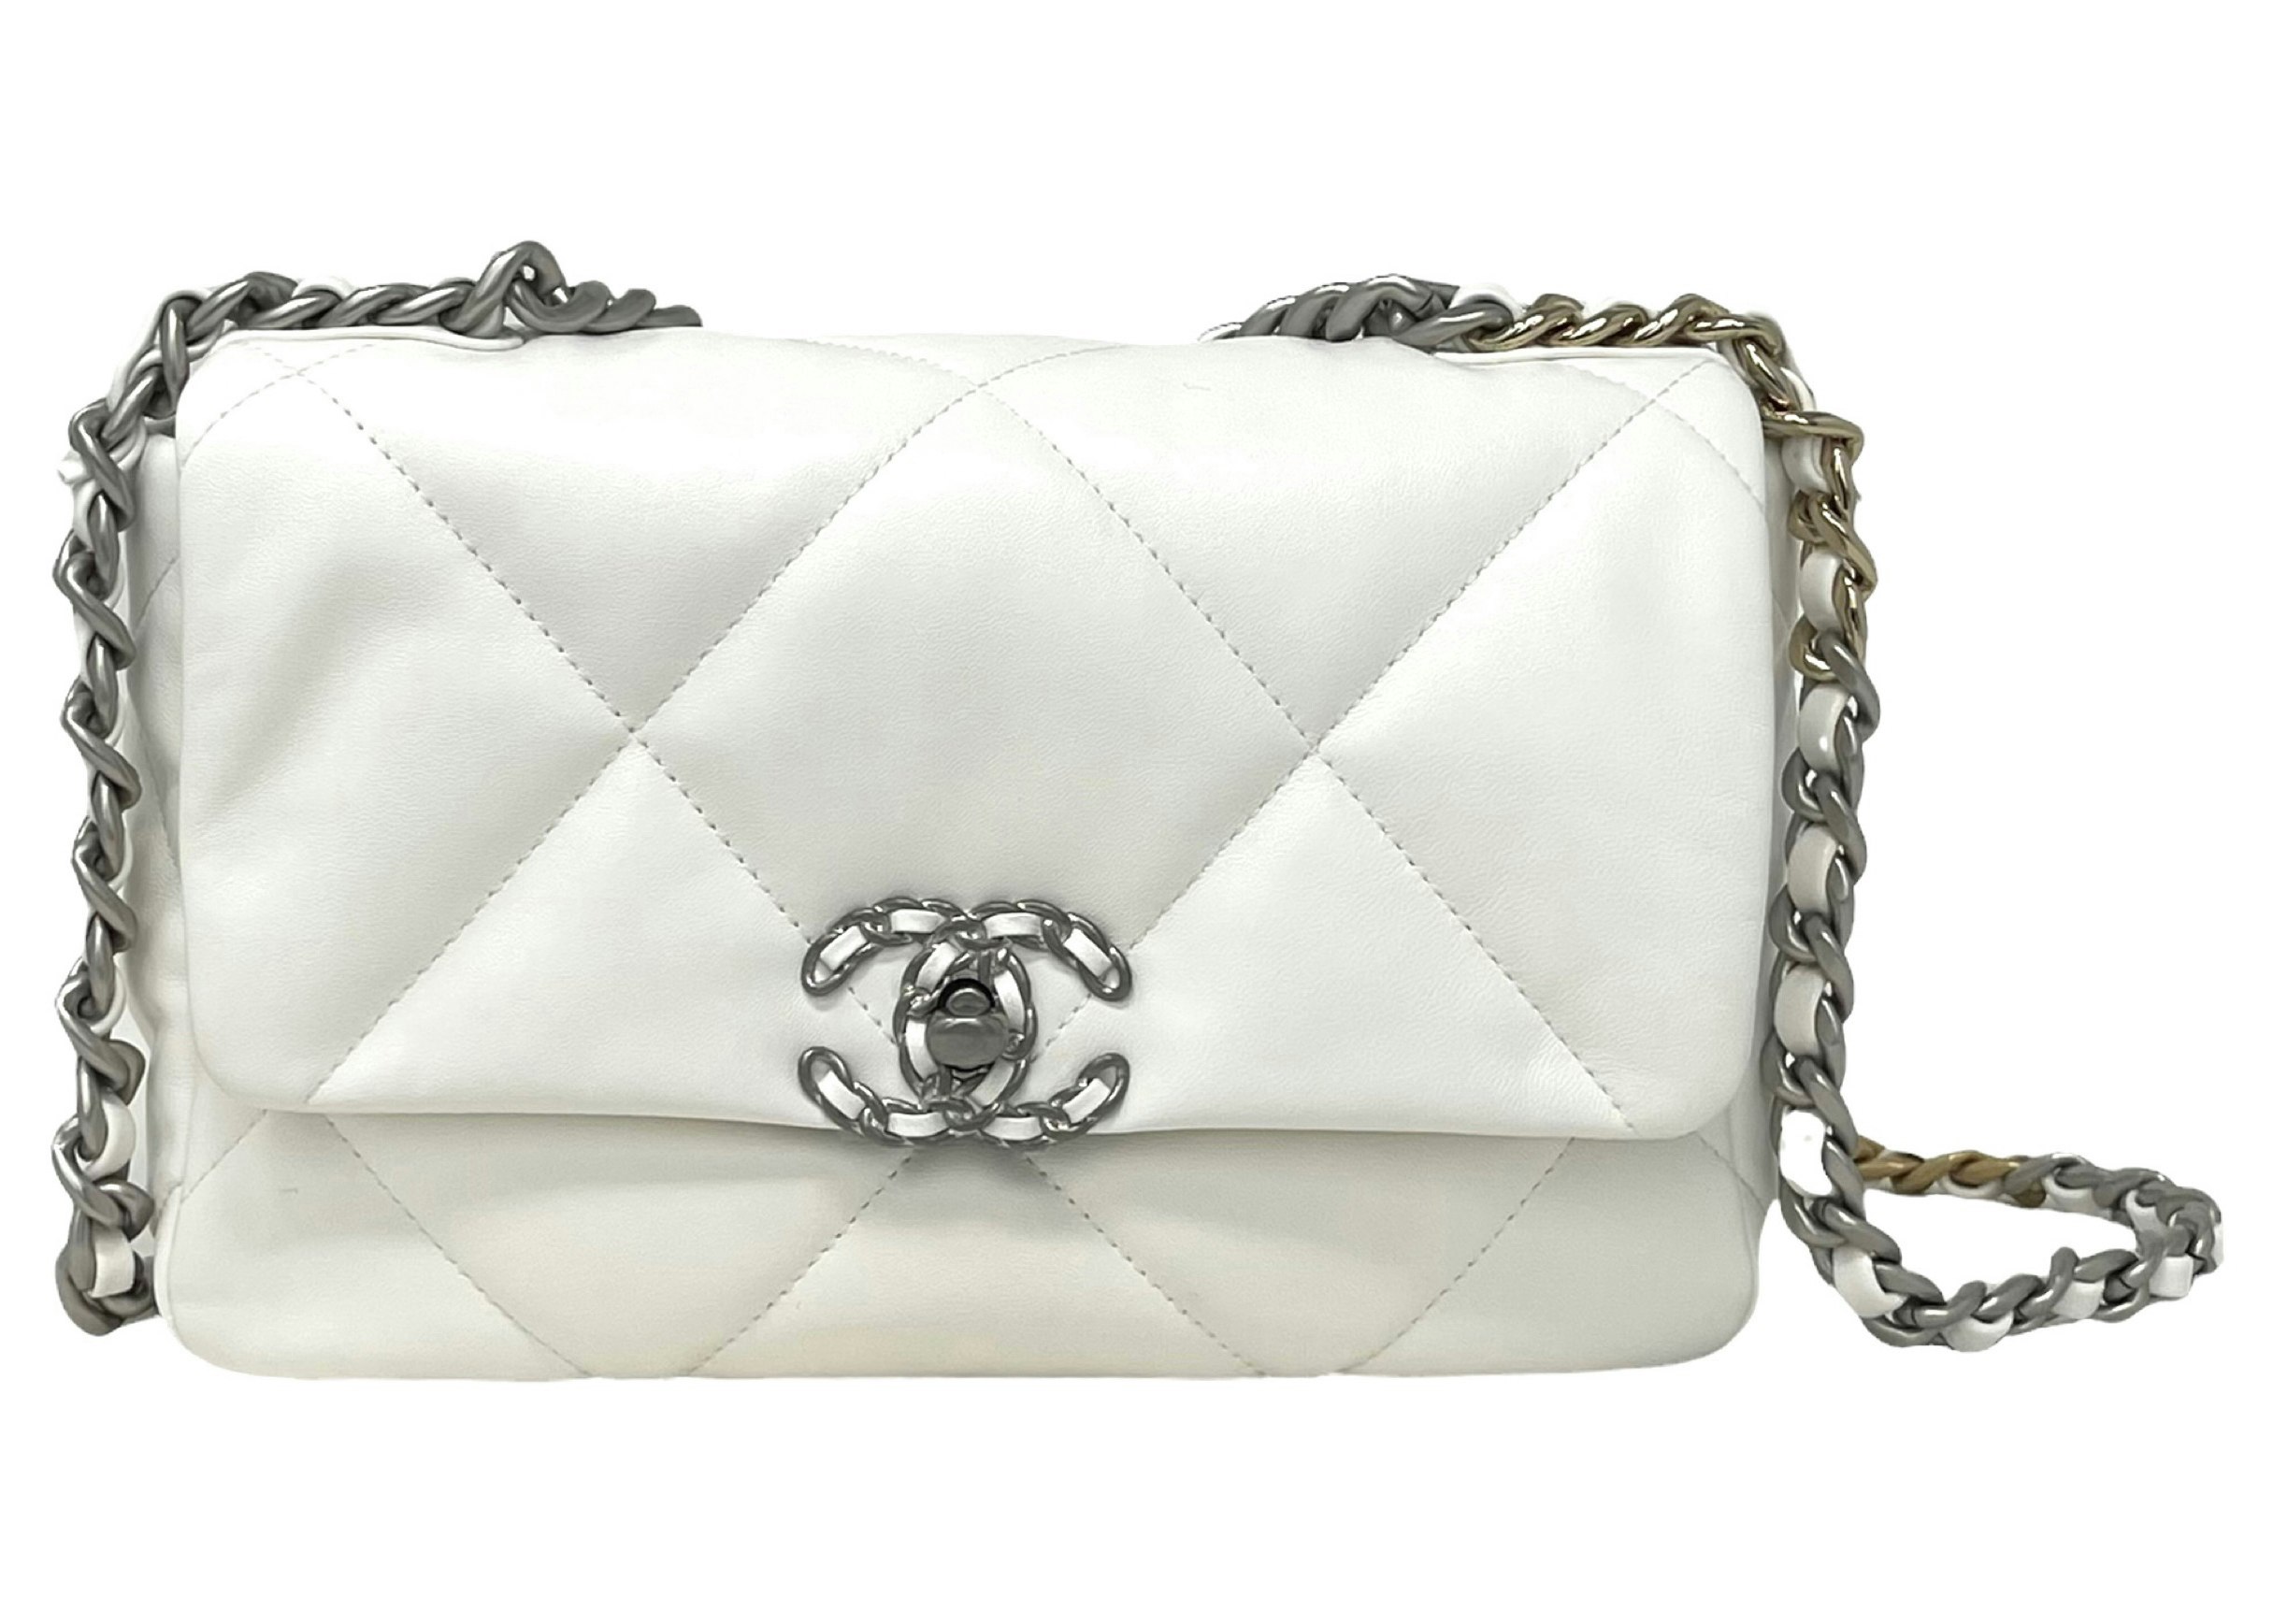 Chanel 22 Handbag 22S Calfskin WhiteGold Logo in Calfskin Leather with  Goldtone  US